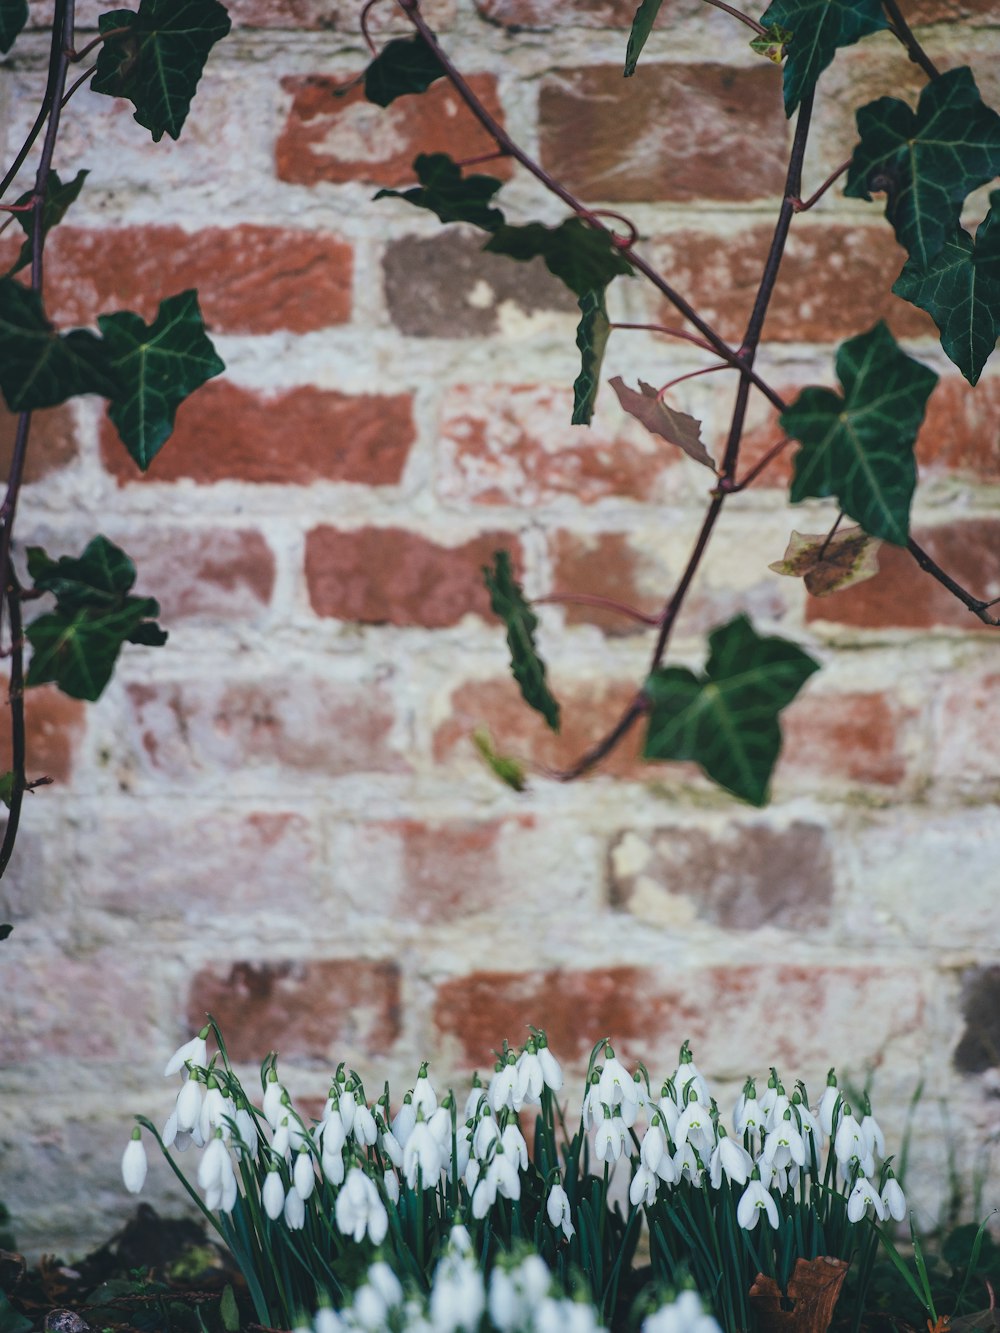 cipó de folhas verdes e tulipas brancas em fotografia de foco seletivo